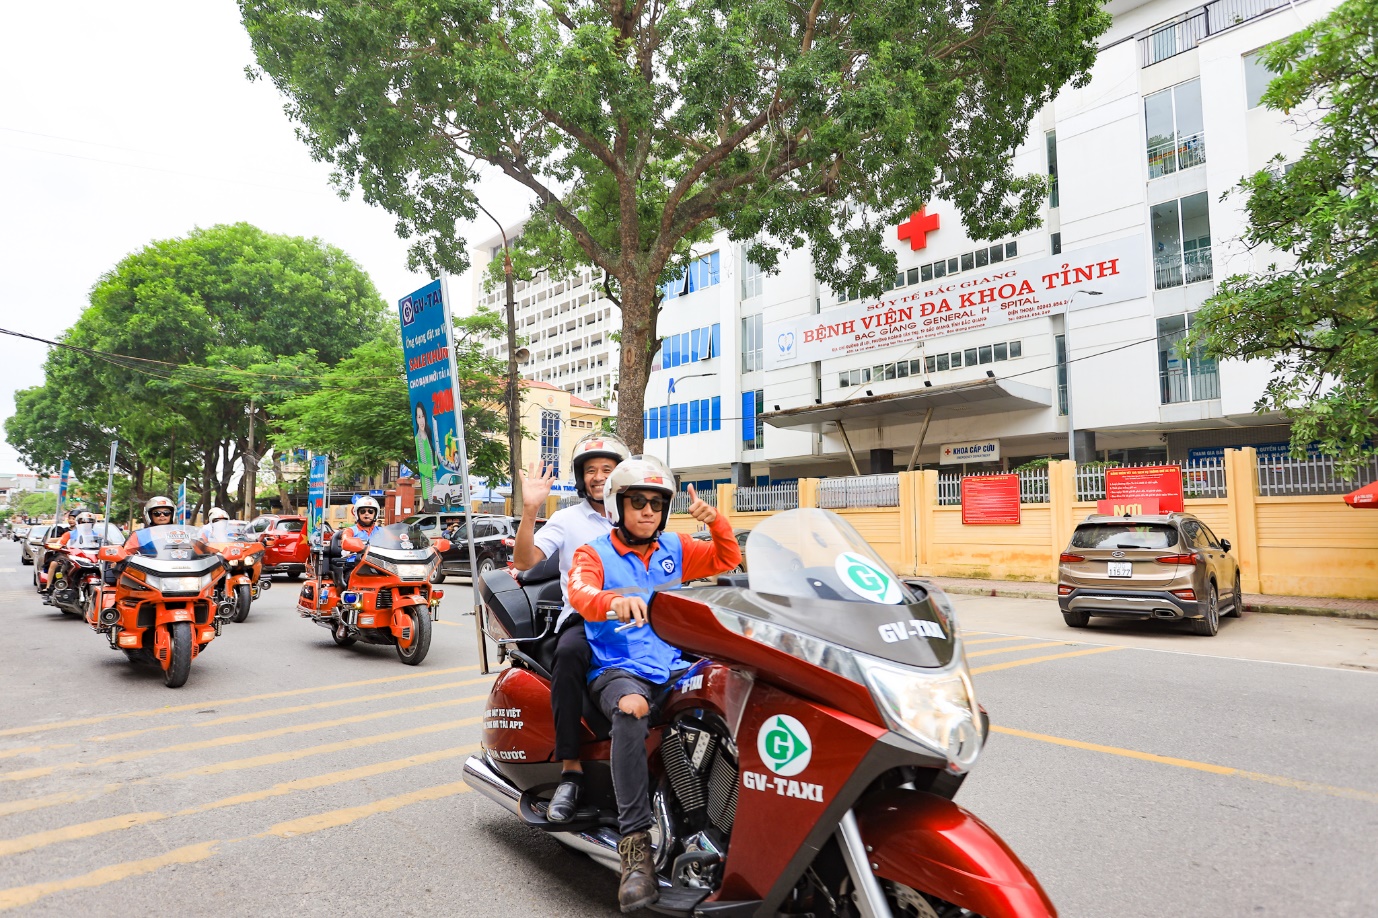 GV Taxi “bắt tay” Hương Giang: Đưa app đặt xe công nghệ tới người dân Bắc Giang - 5